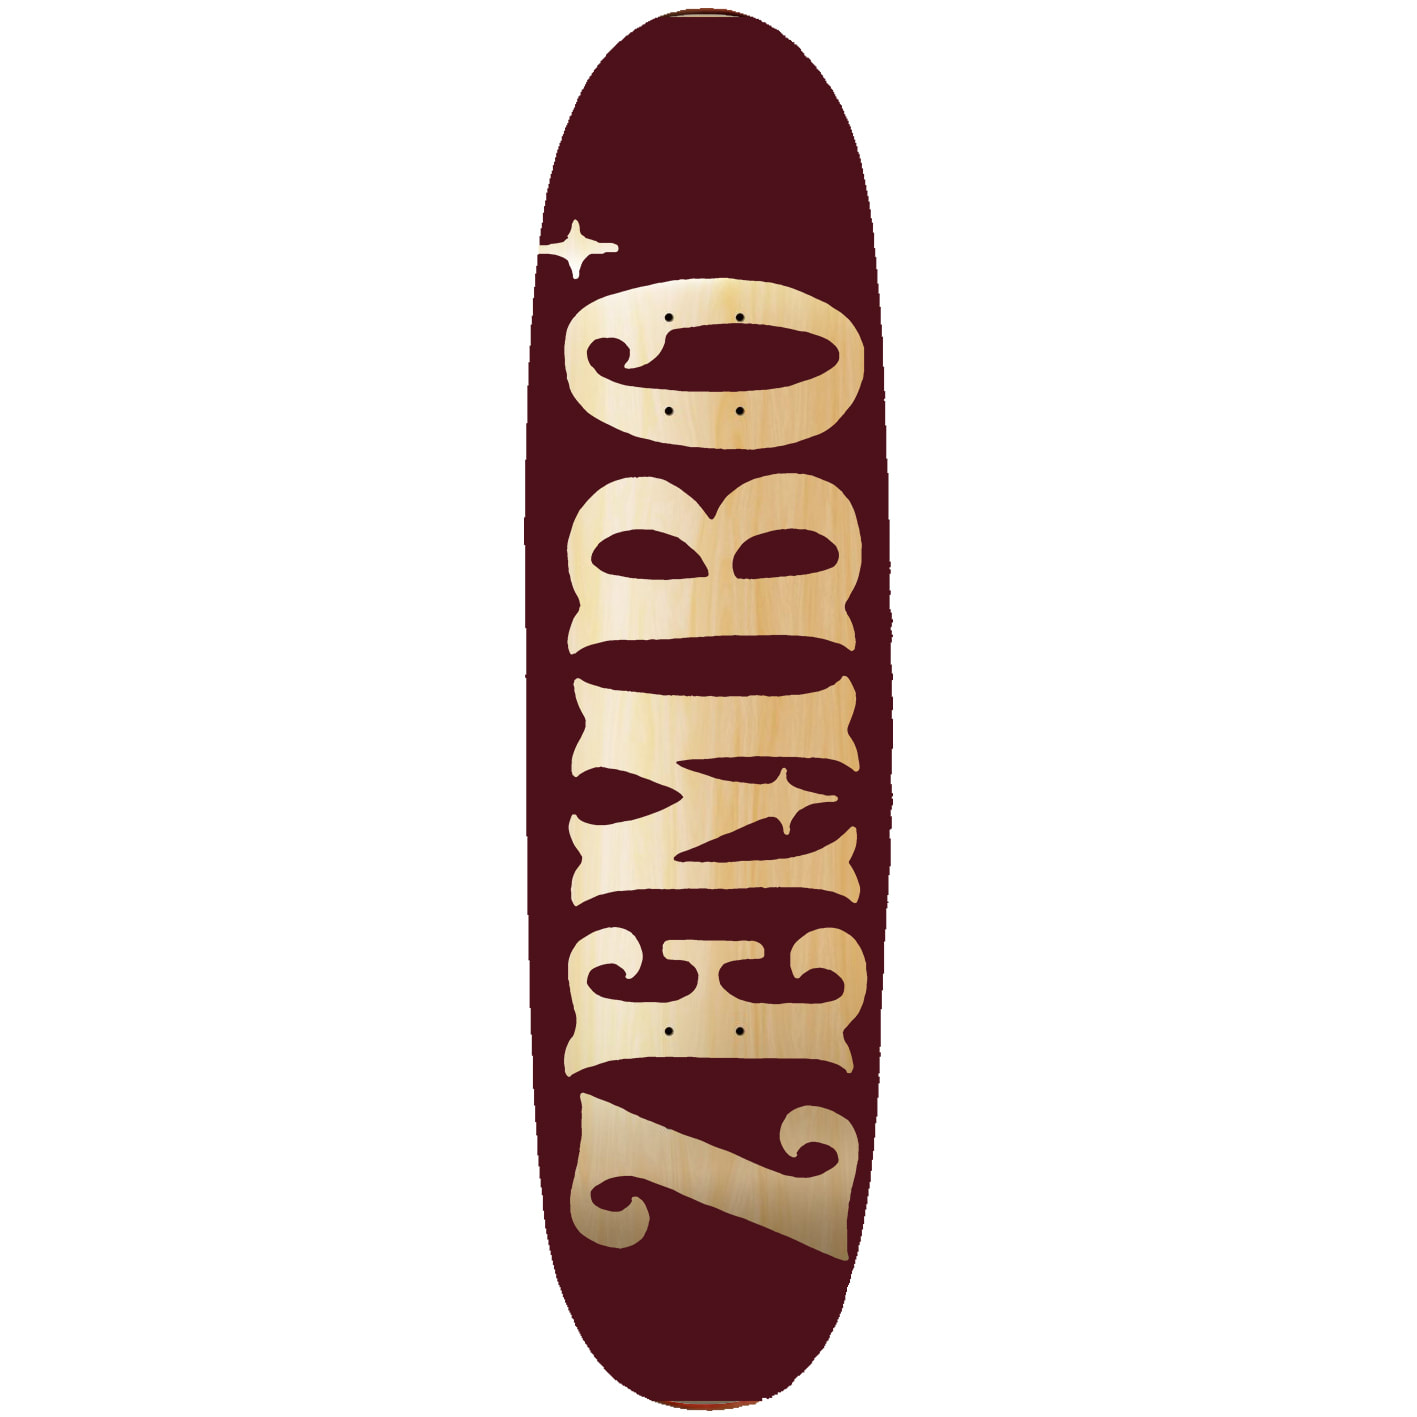 Zembo | Zembo Temple of Skate and Design